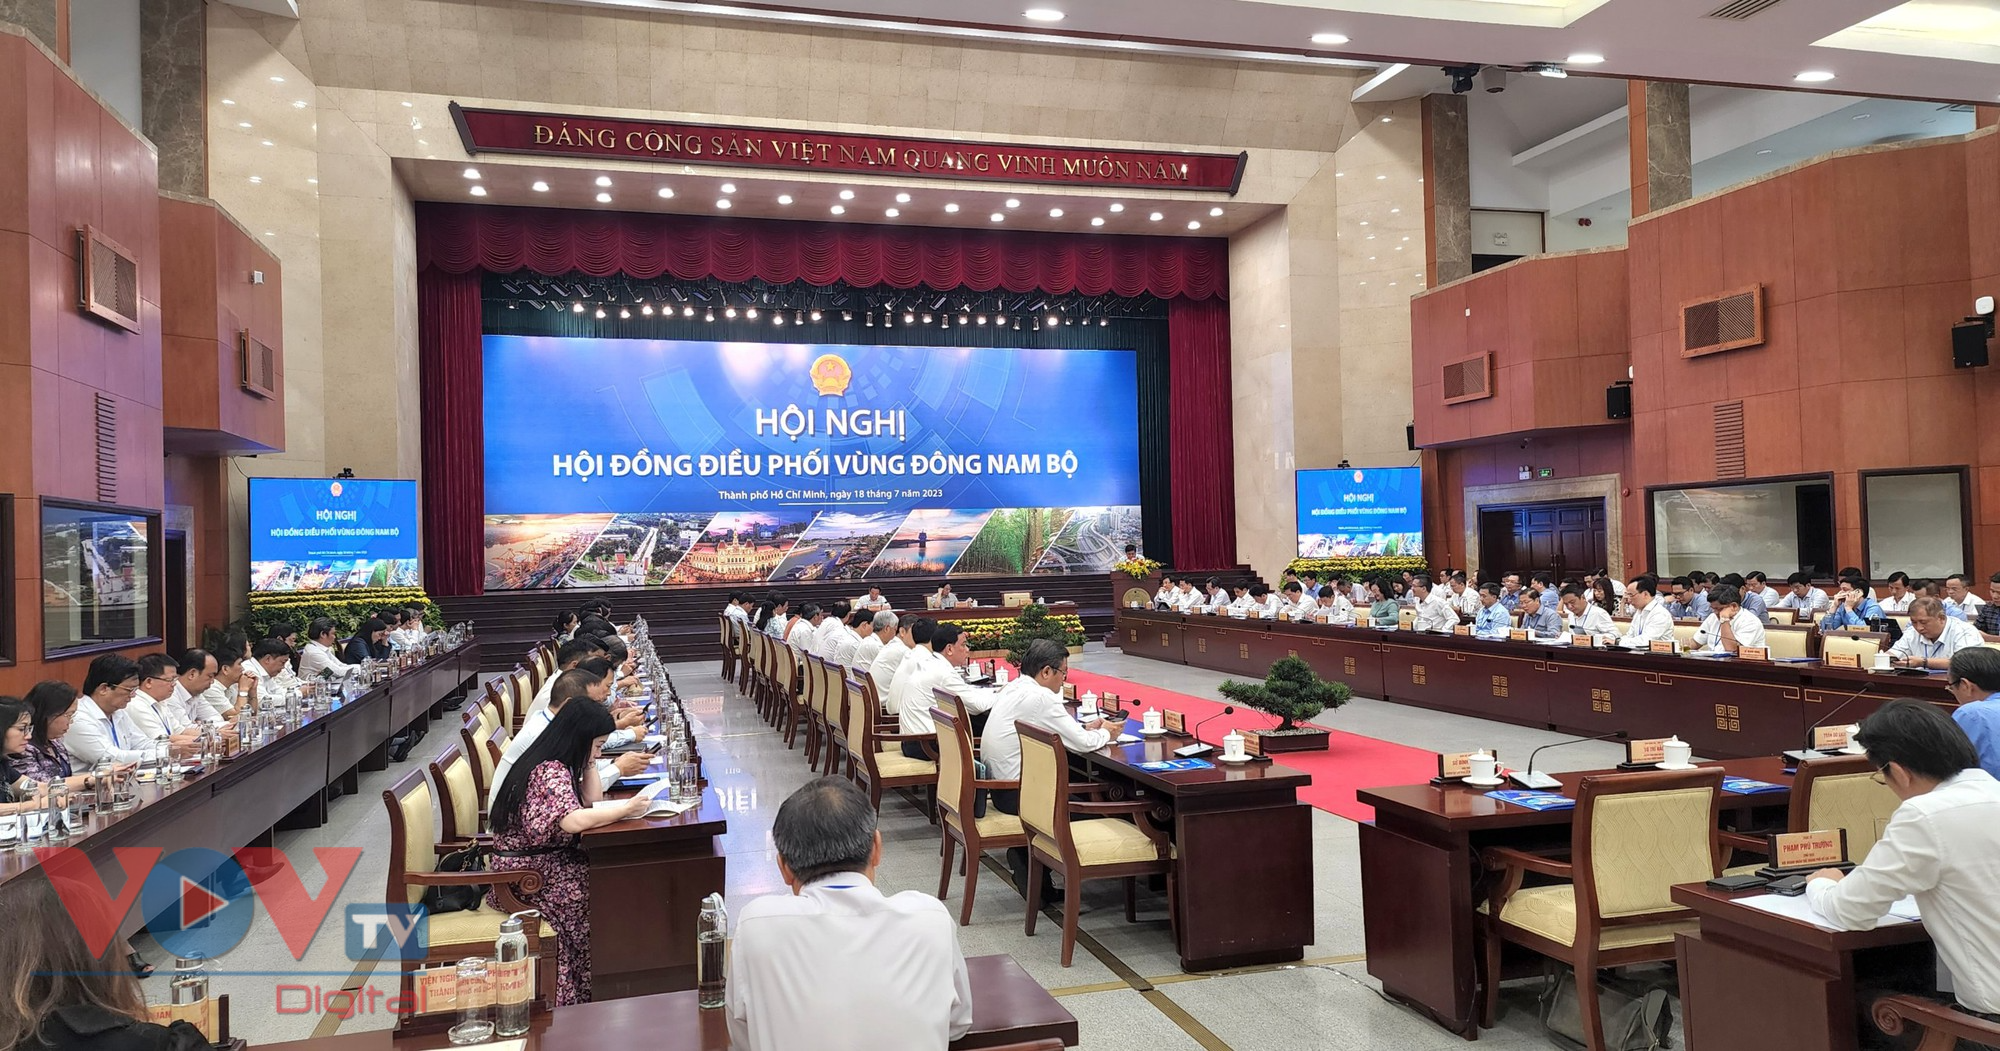 Thủ tướng Phạm Minh Chính chủ trì Hội nghị Hội đồng điều phối vùng Đông Nam bộ - Ảnh 3.